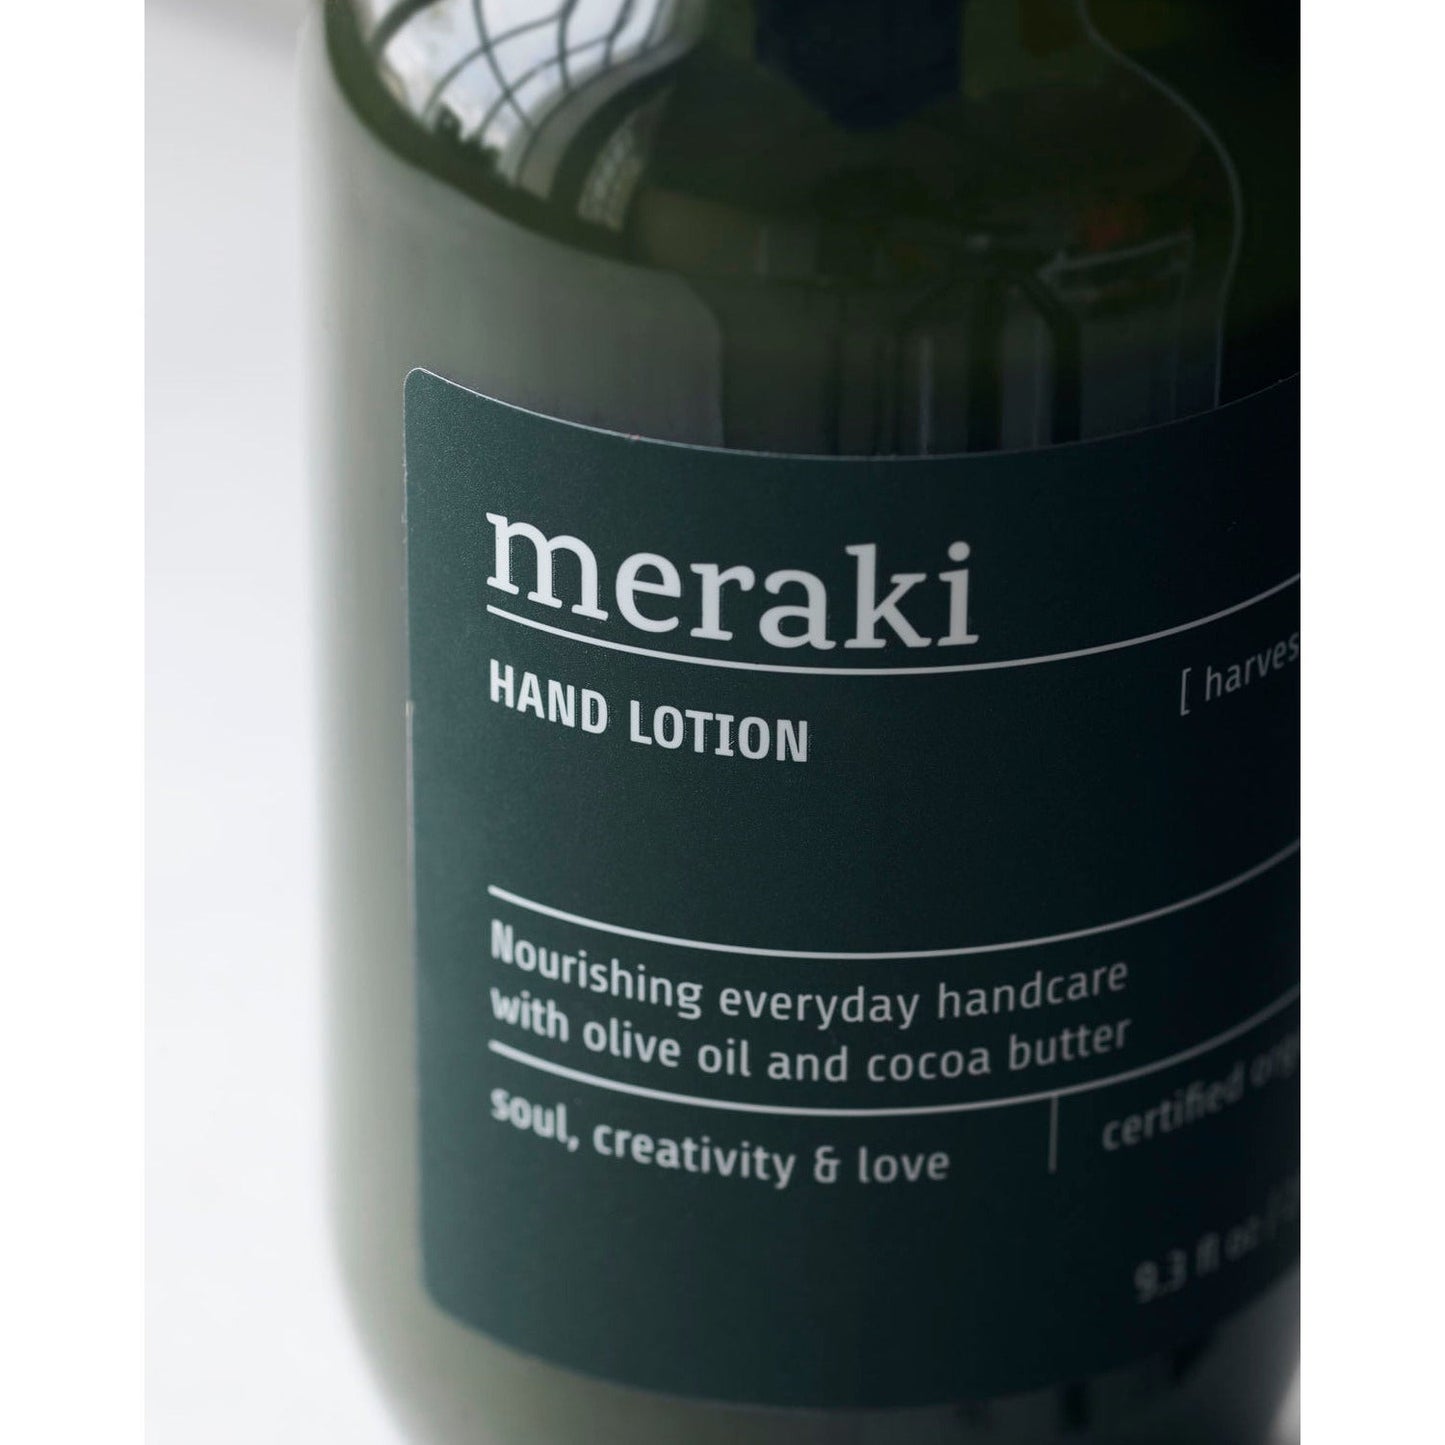 Meraki Hand lotion, Harvest moon